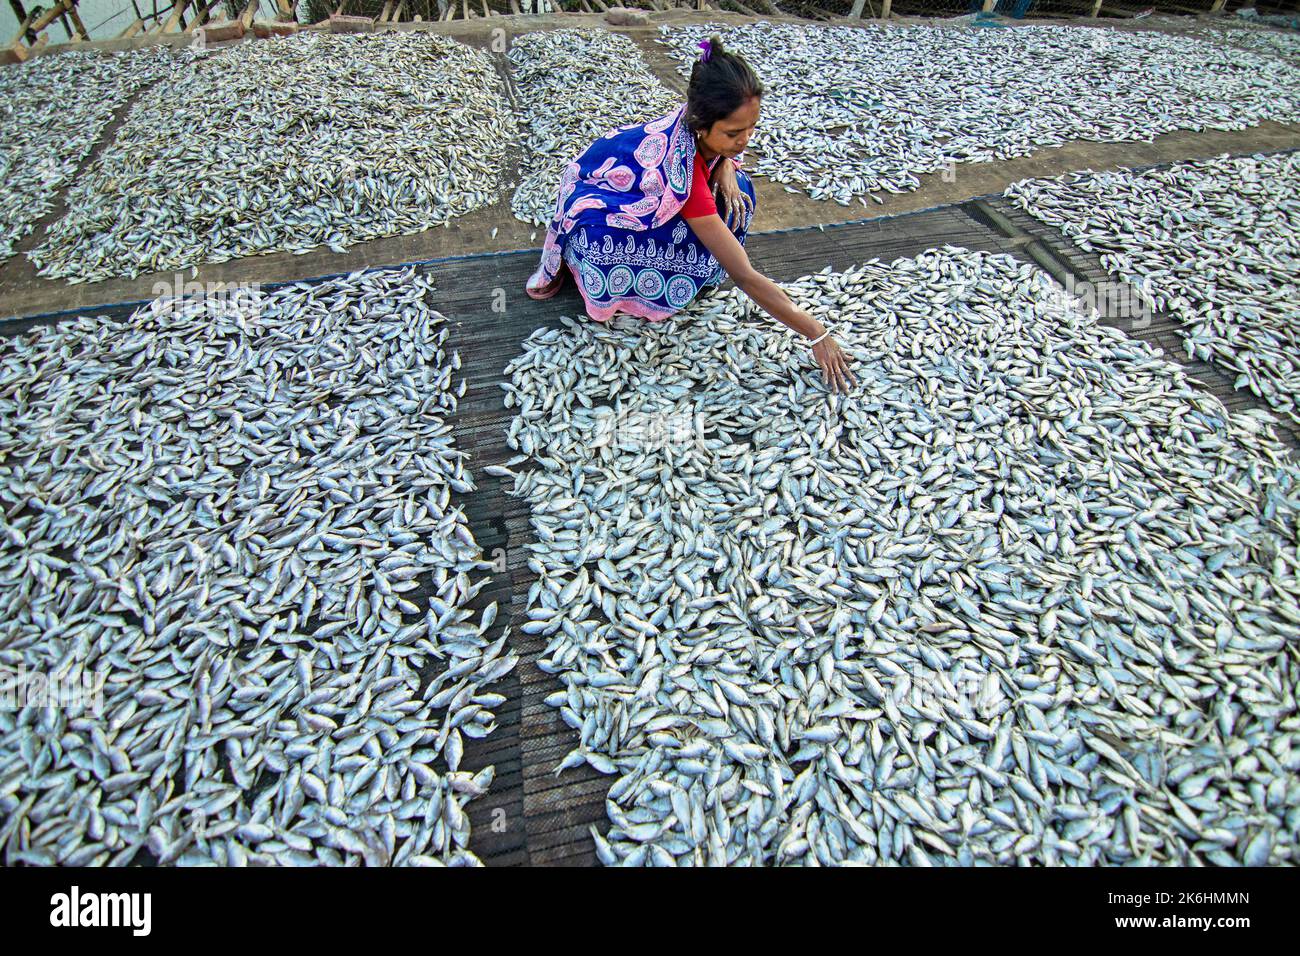 Les femmes traitent les petits poissons pour les affaires de poissons secs. Les travailleurs coupent et nettoient les poissons, ajoutent du sel, puis séchez-les sur une plate-forme en bambou. Banque D'Images